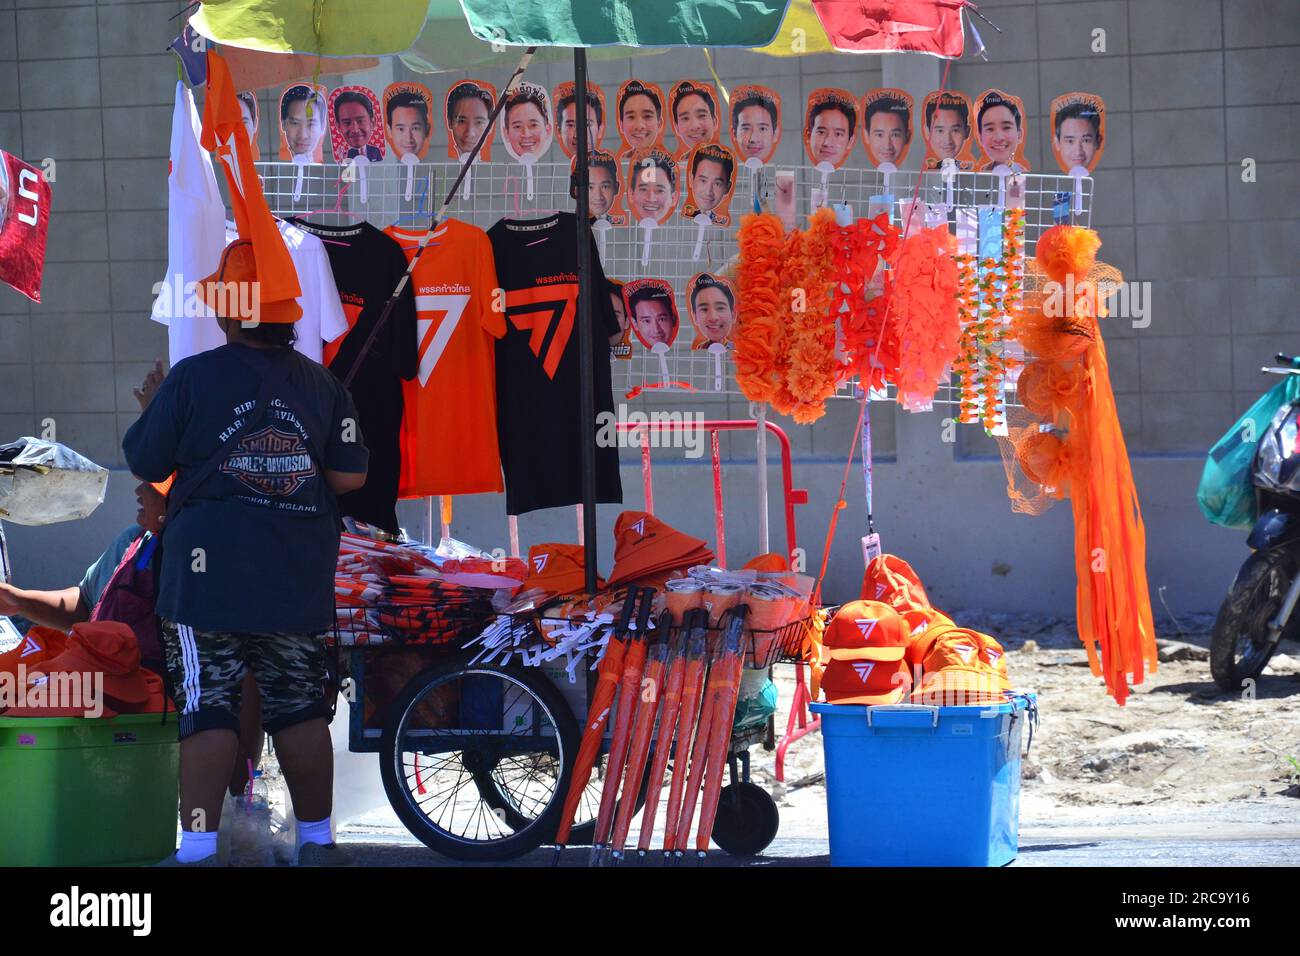 Les marchandises en vente sur l'un des nombreux étals de marché à proximité présentent l'image de Pita Limjaroenrat et le thème orange. Manifestation près du Parlement, Bangkok, Thaïlande. Le Parlement thaïlandais vote le 13 juillet pour décider si le leader du parti Move Forward, Pita Limjaroenrat, qui a remporté le plus grand nombre de sièges aux élections de mai, peut devenir le nouveau Premier ministre, mettant fin à 9 ans de règne de l'ancien chef de l'armée Prayuth Chan-ocha. Banque D'Images